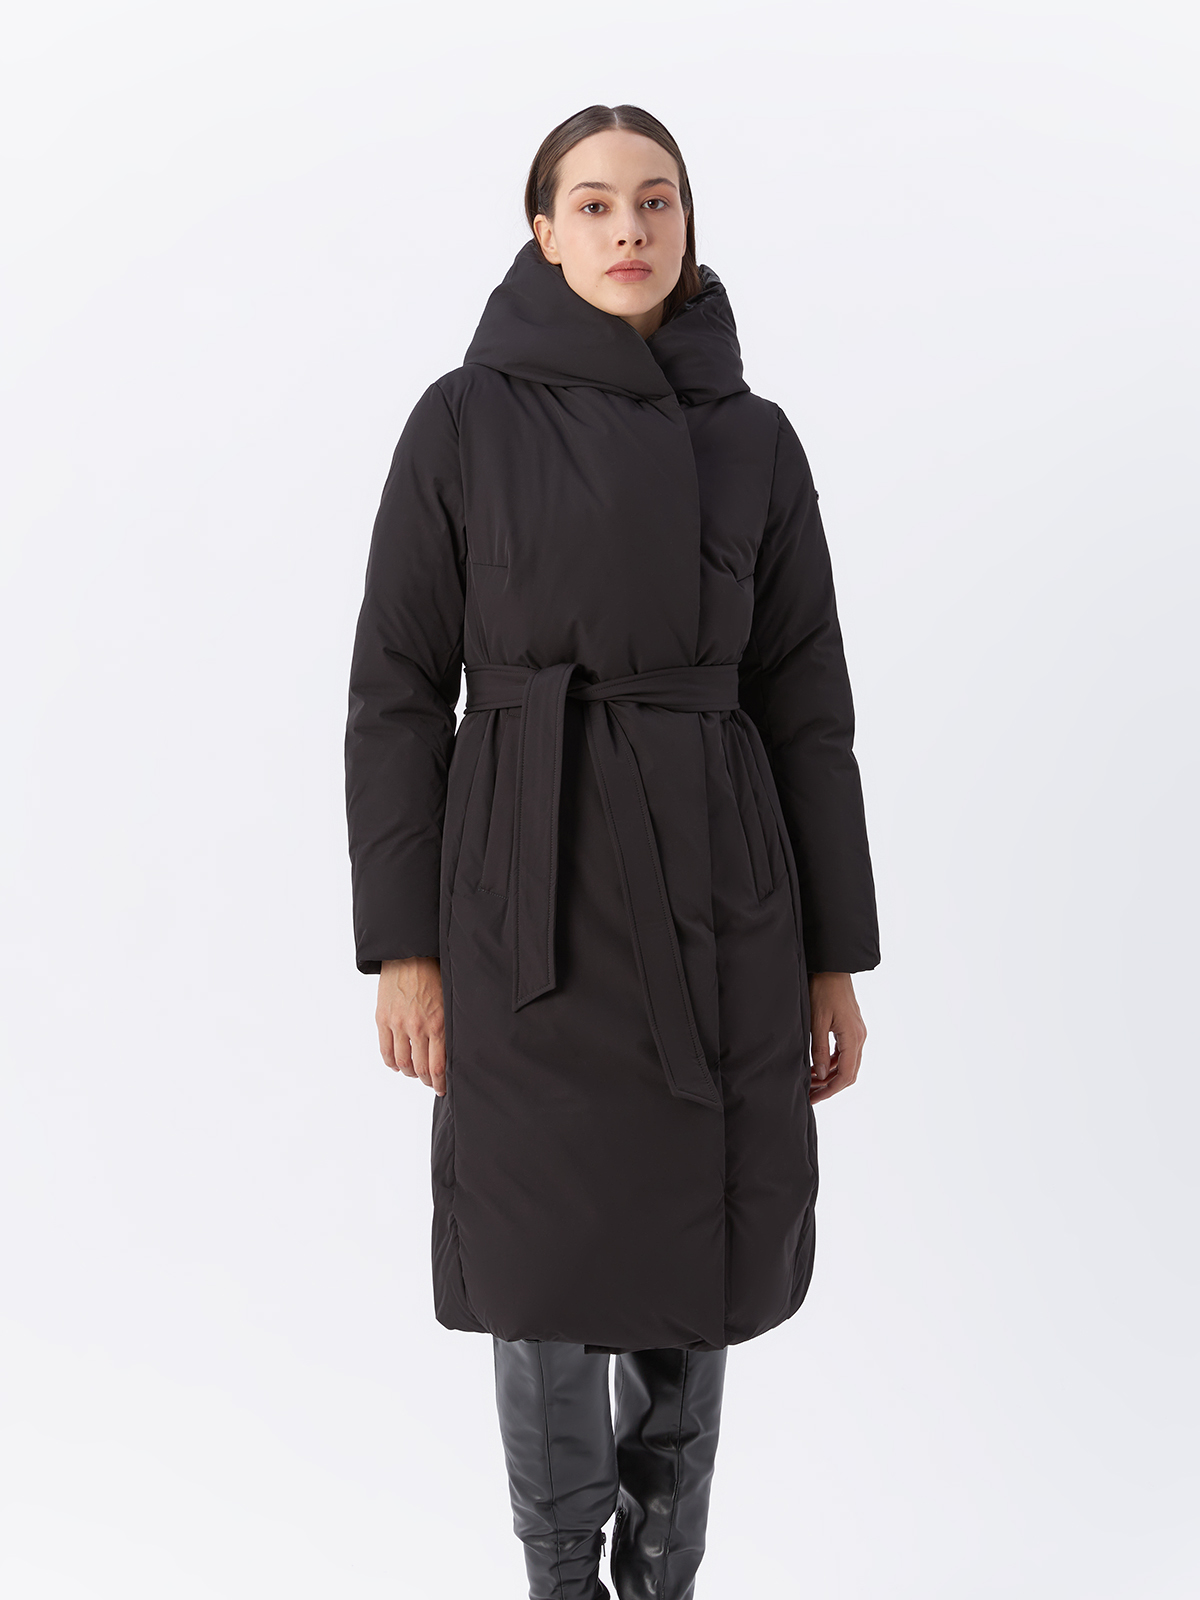 Пальто женское Veralba VEF-192MW черное 46